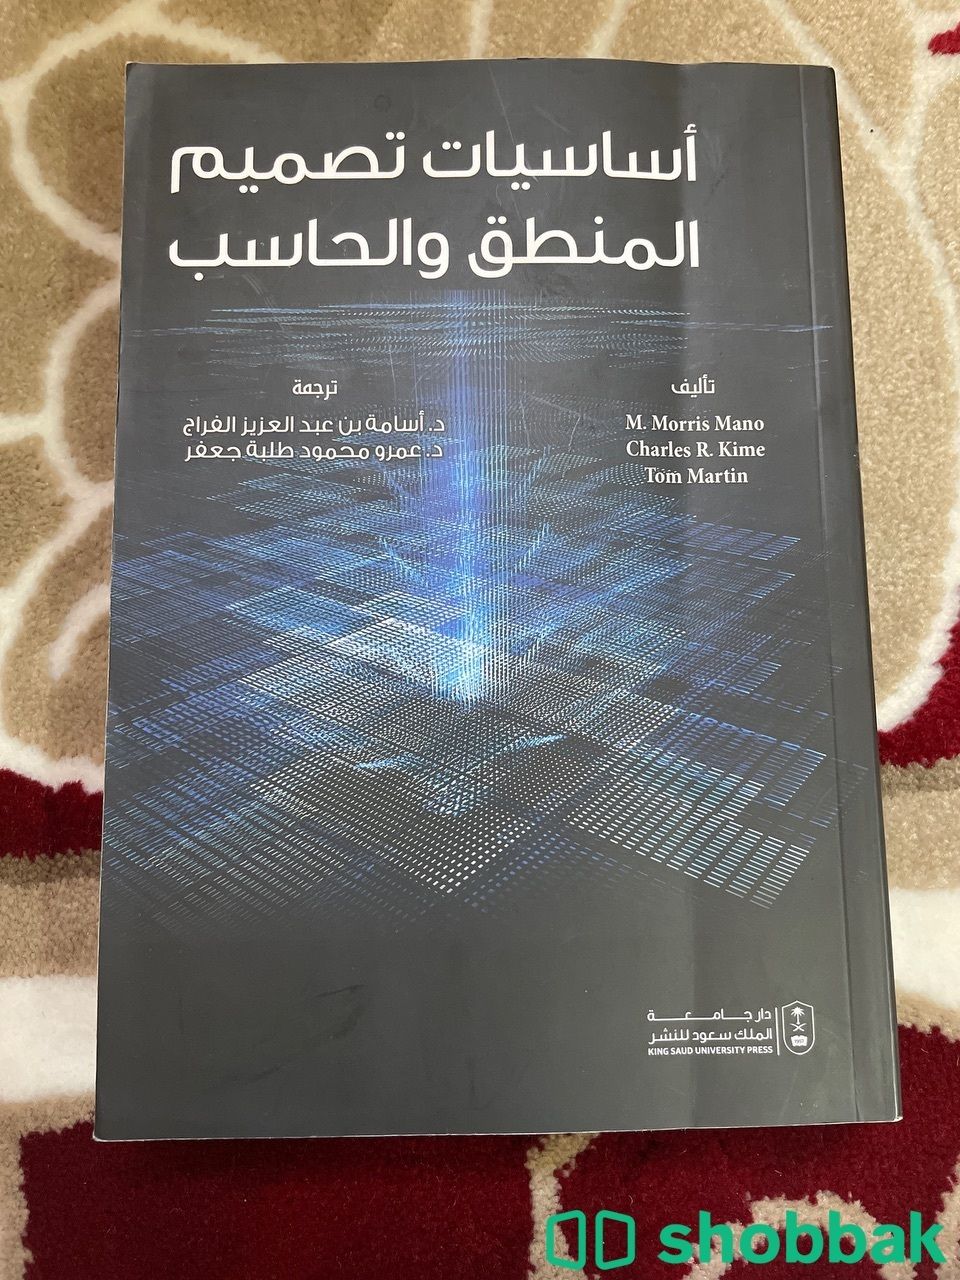 اساسيات تصميم المنطق و الحاسب  Shobbak Saudi Arabia